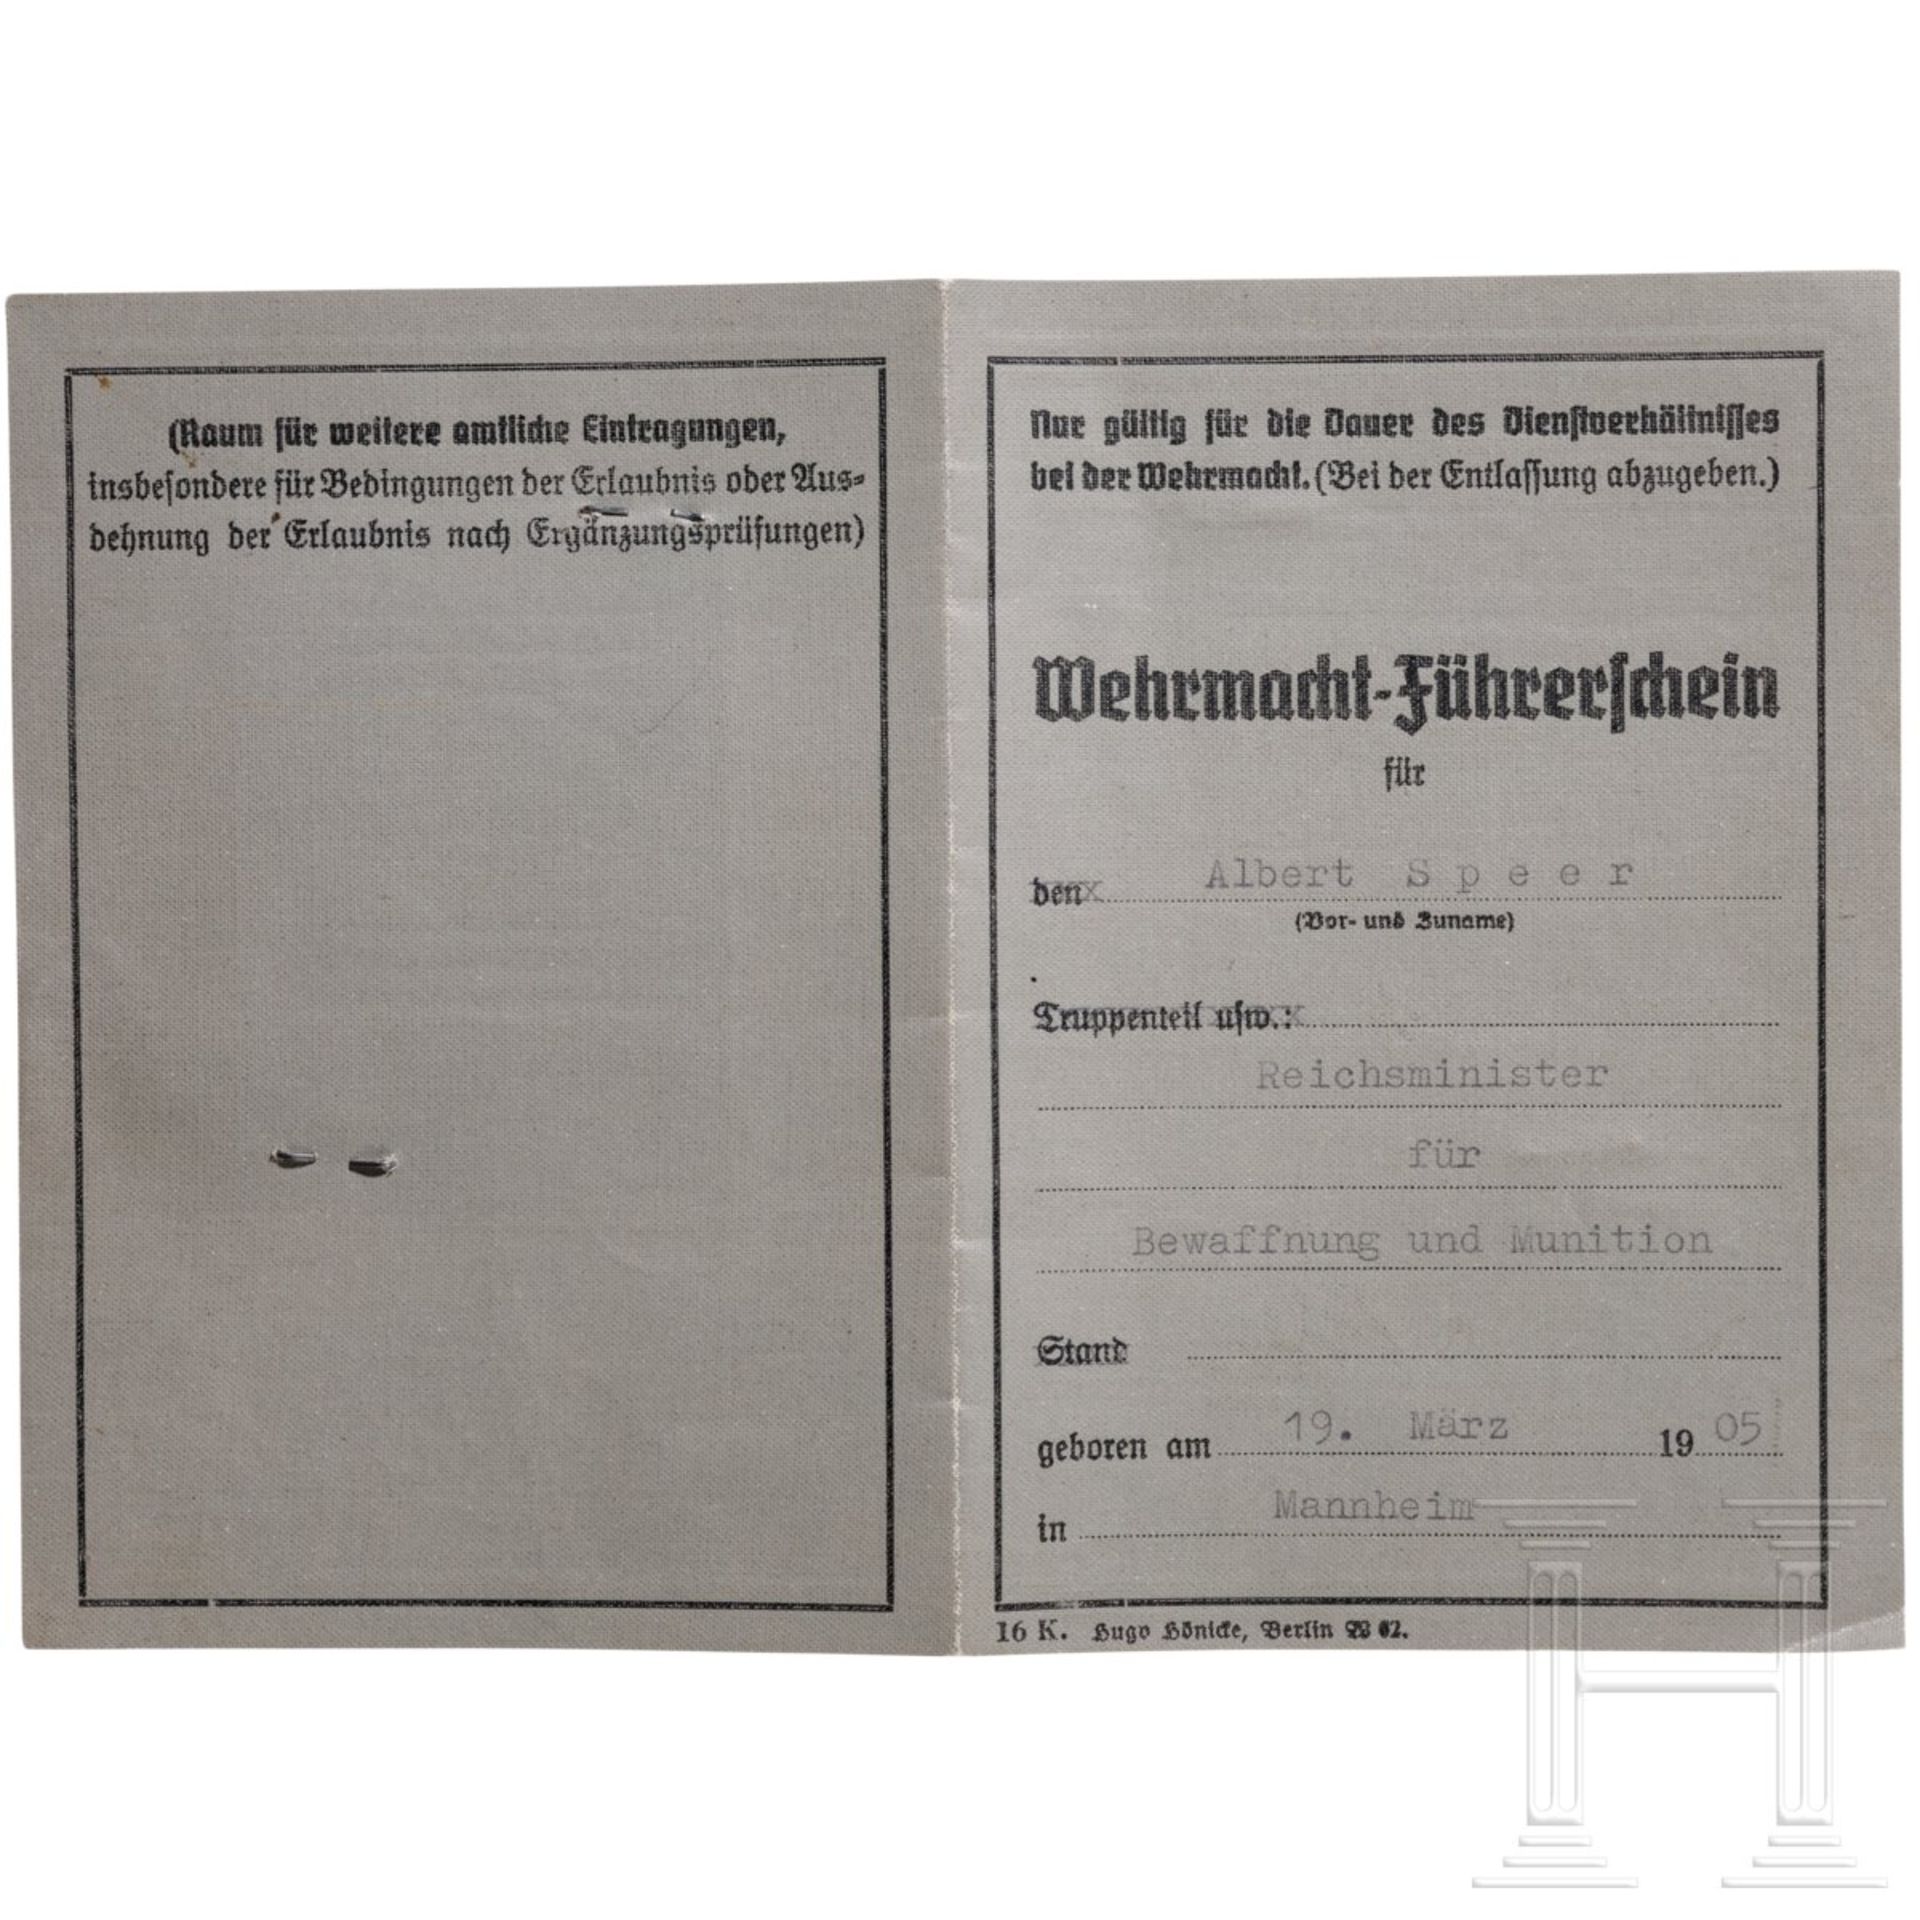 Albert Speer - Wehrmacht-Führerschein als Reichsminister für Bewaffnung und Munition, 1942 - Image 2 of 3